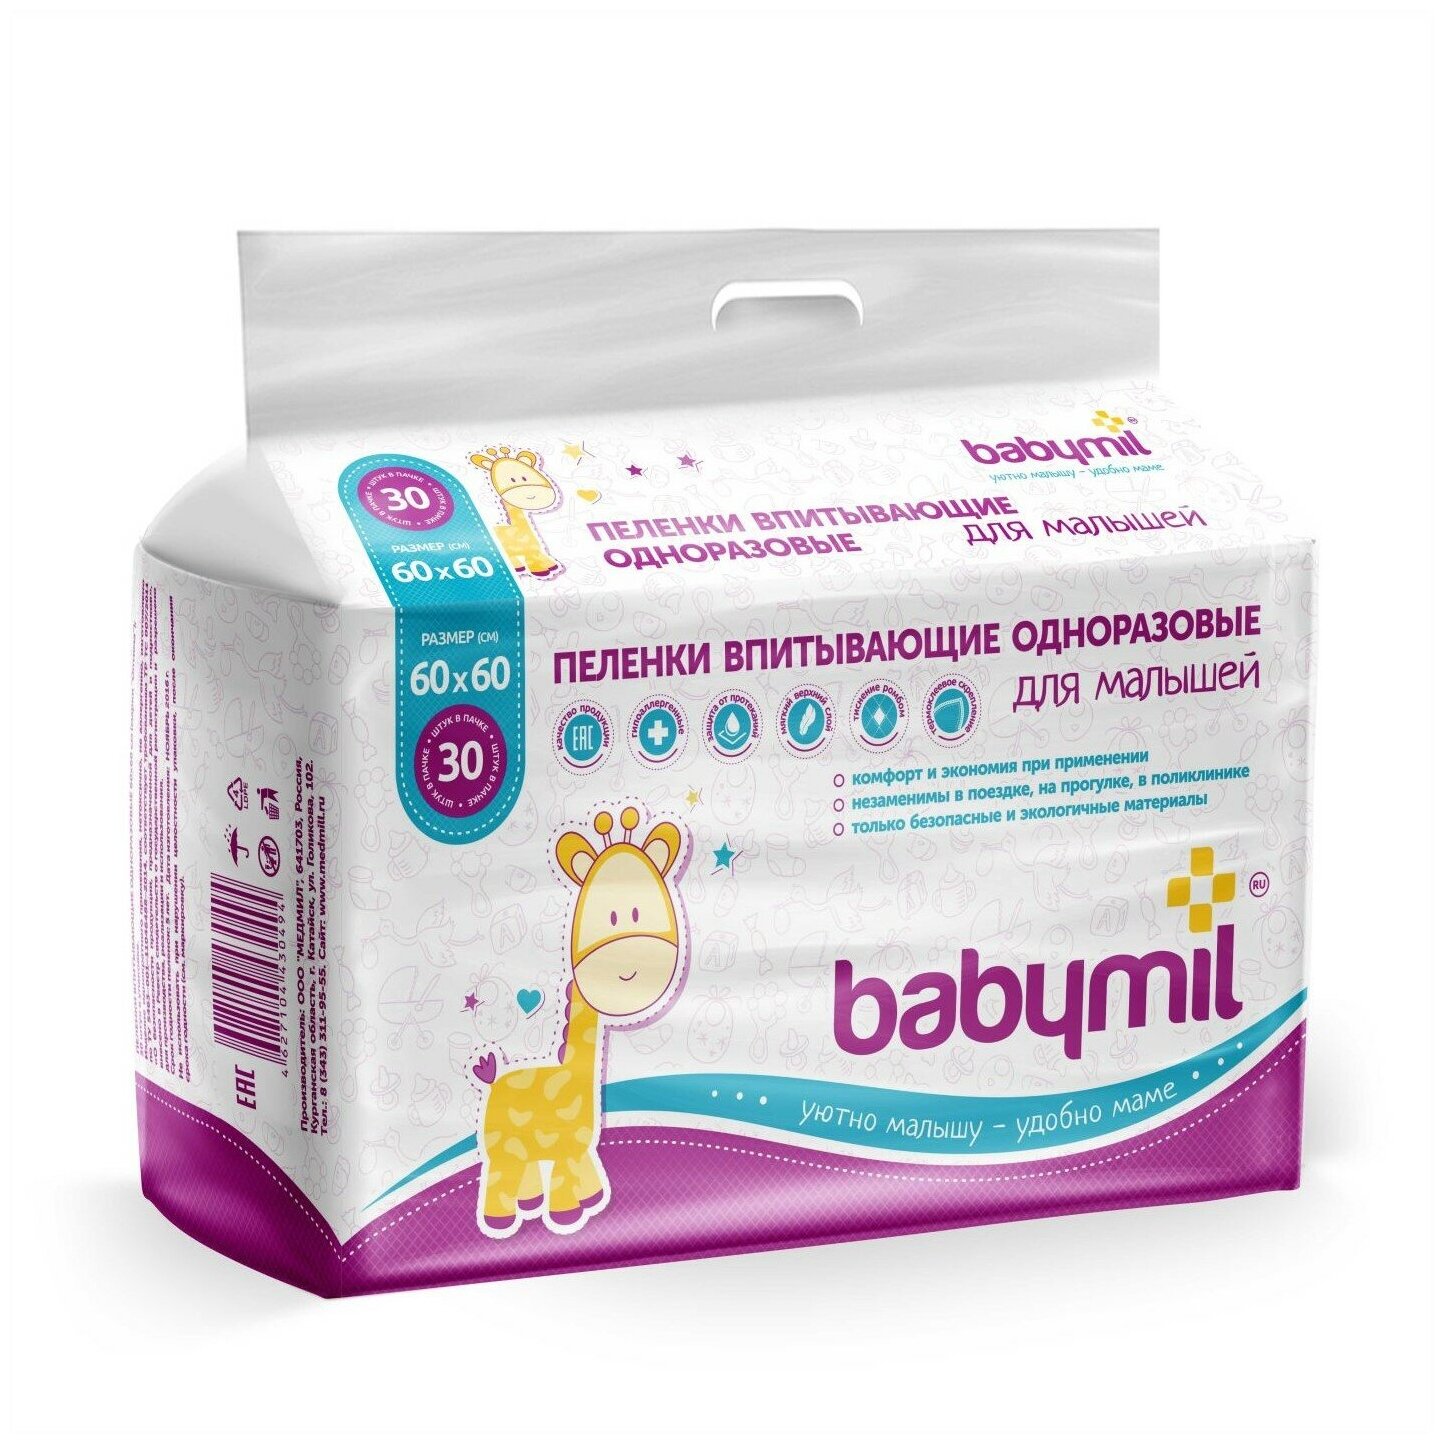 BabyMil Пеленки впитывающие одноразовые для малышей 60*60 см.(упаковка 30 штук)